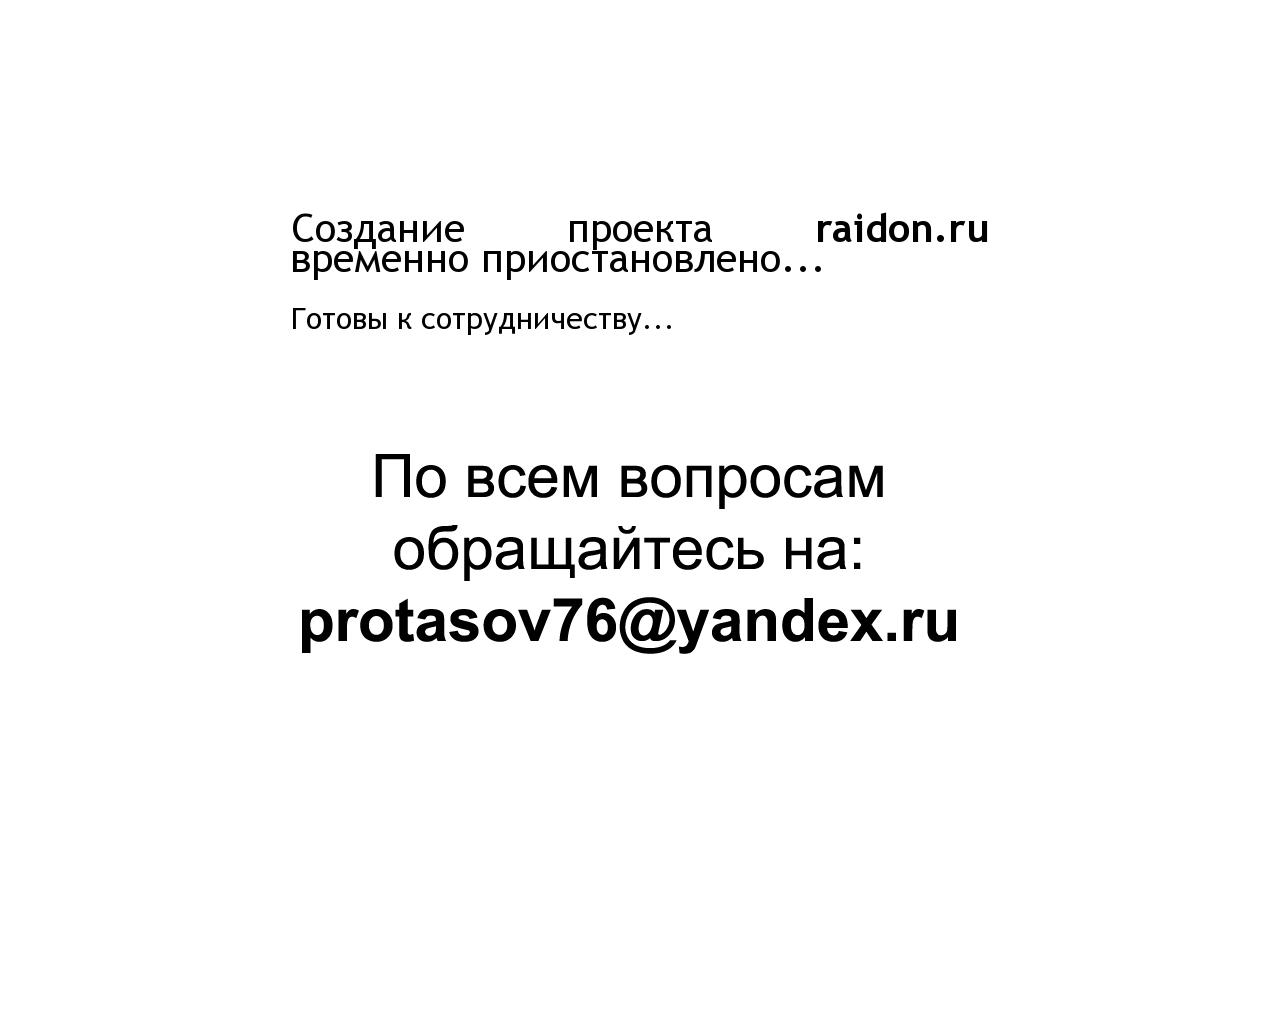 Изображение сайта raidon.ru в разрешении 1280x1024